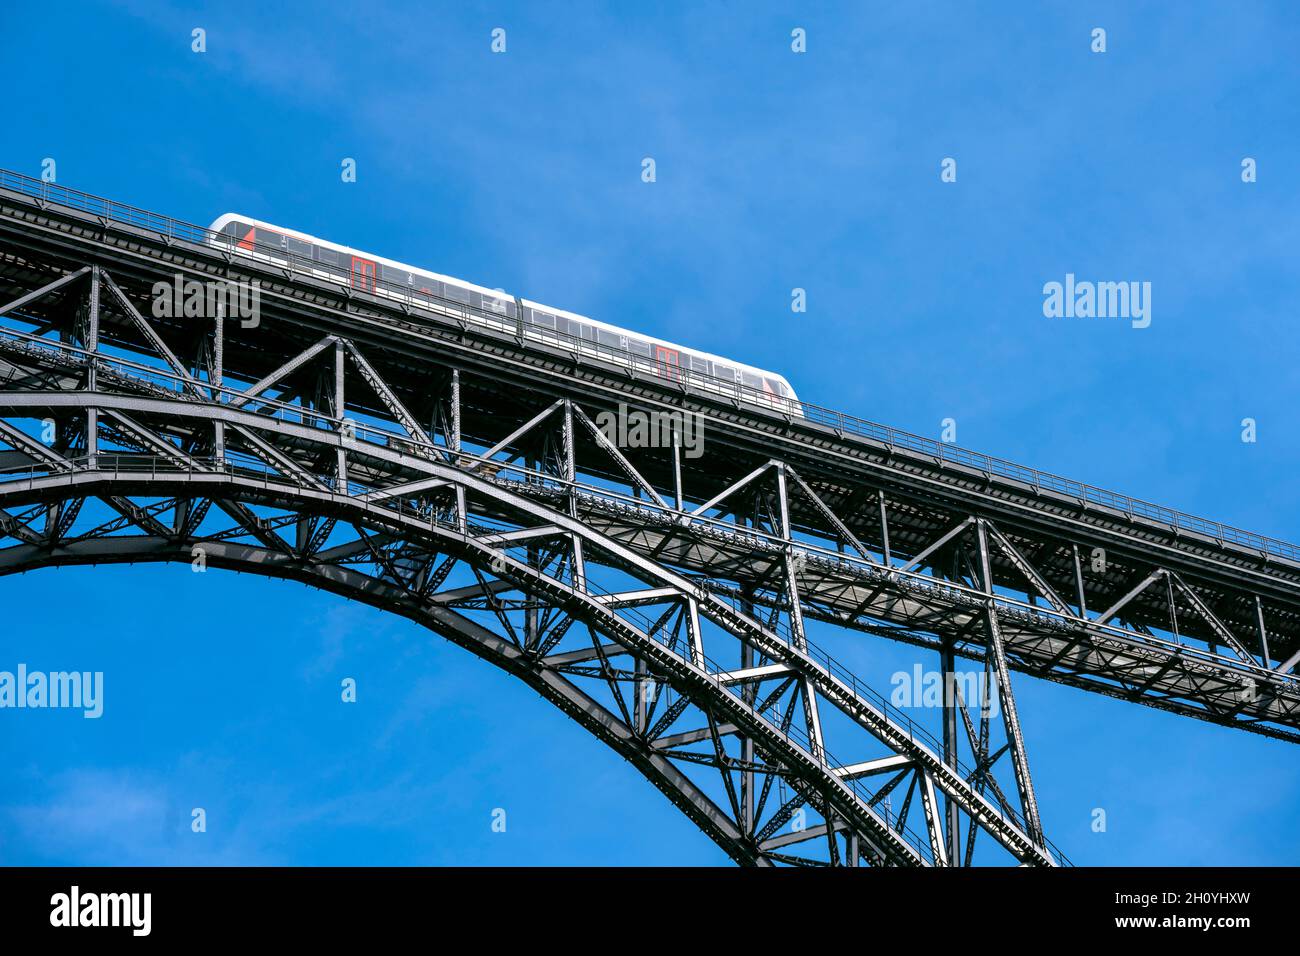 Deutschland, Nordrhein-Westfalen, Solingen, Die Müngstener Brücke ist die höchste Eisenbahnbrücke Deutschlands. Sie überspannt zweigleisig zwischen de Stock Photo